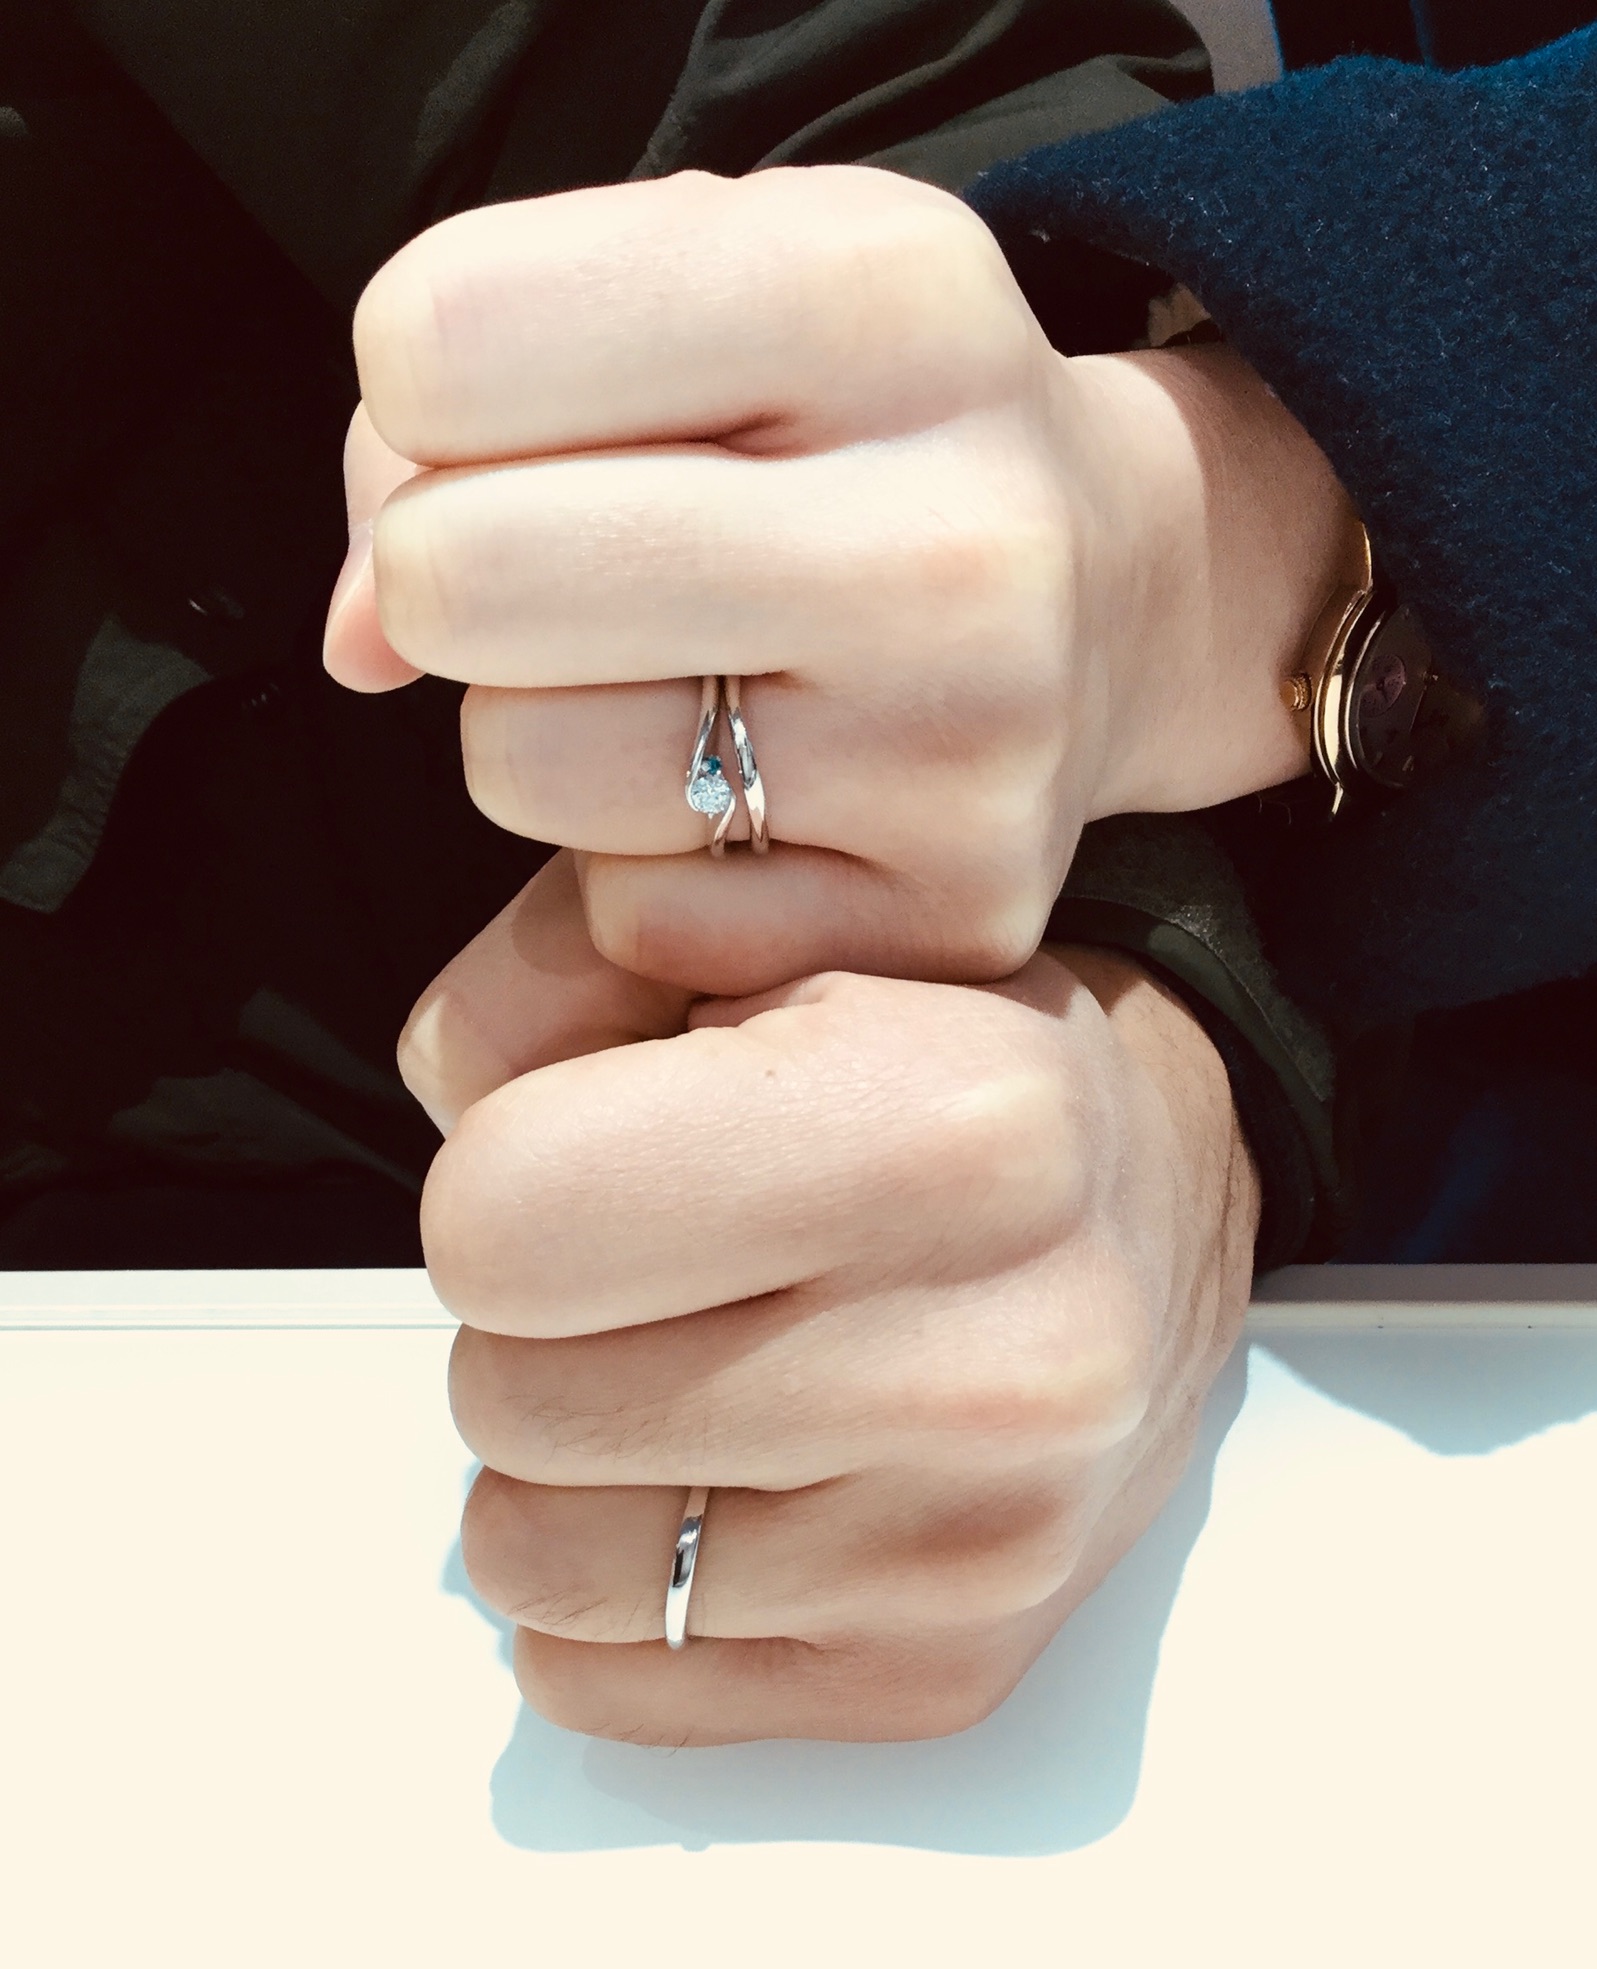 指に馴染むLUCIE(ルシエ)の結婚指輪「リファージュ」(新潟市/S様ご夫婦)